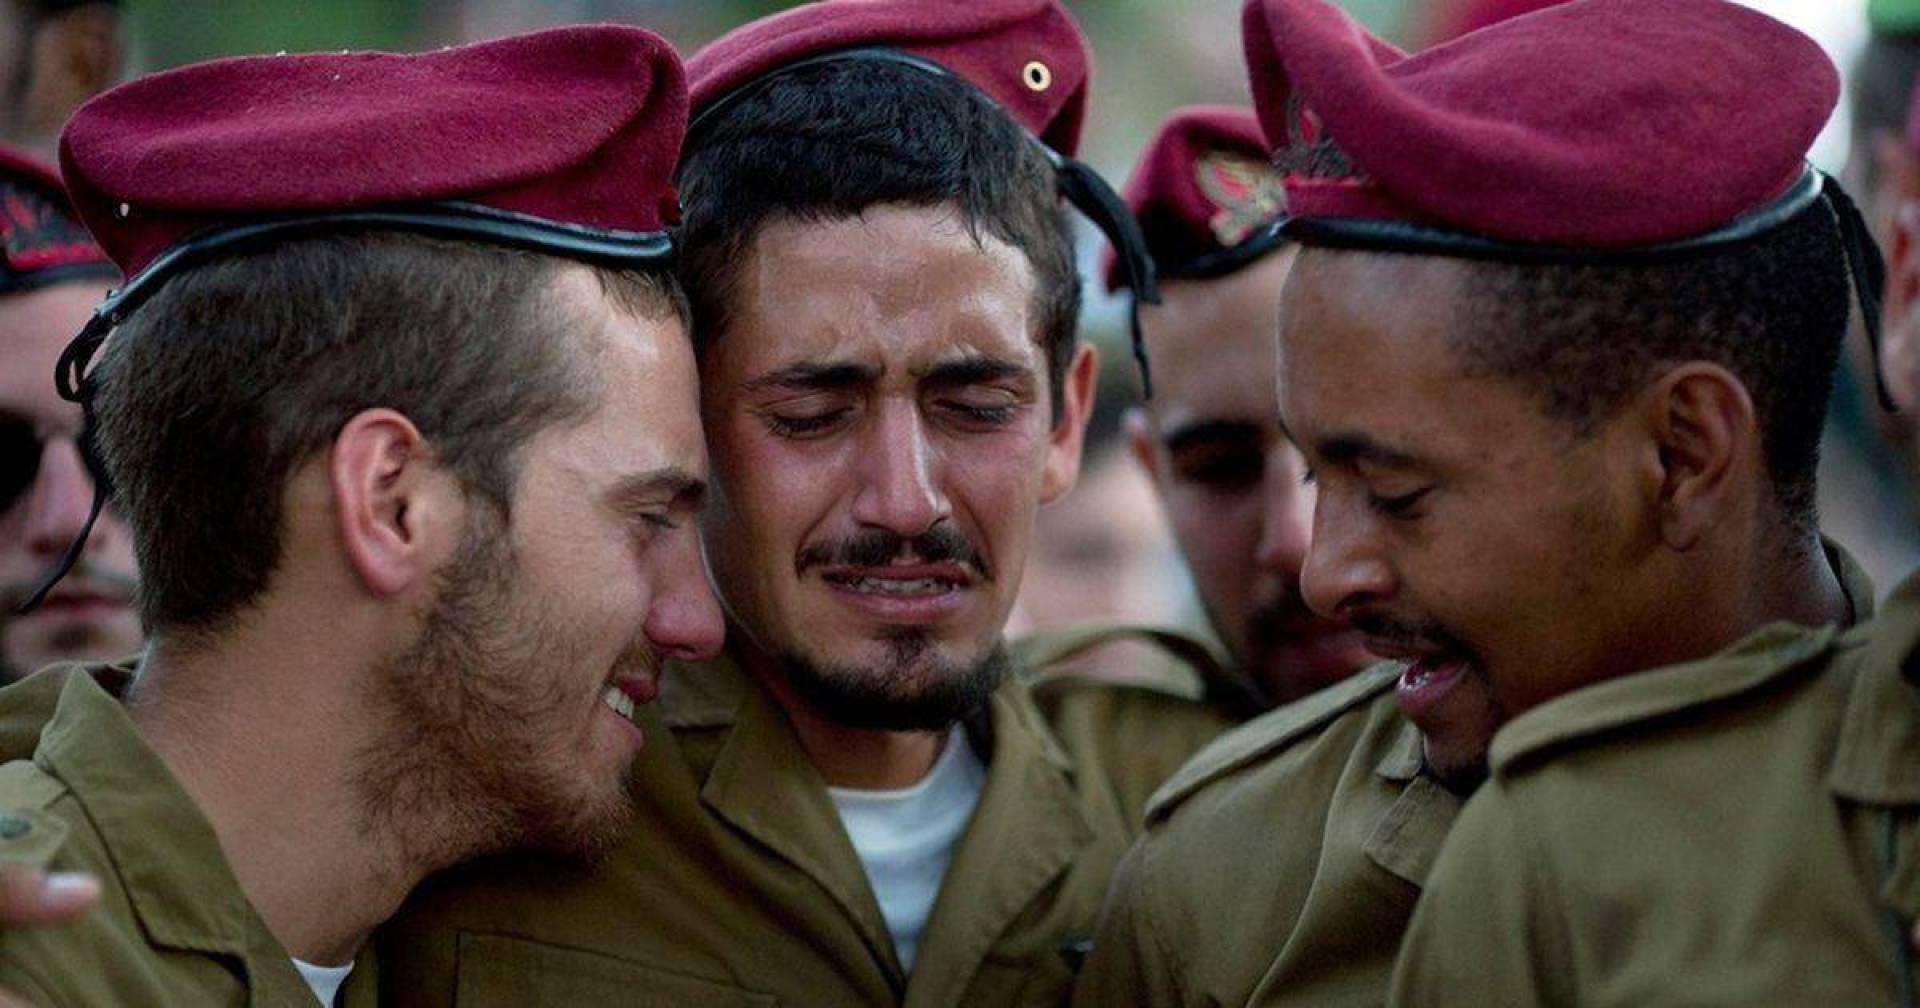 جنود احتياط إسرائيليون: ما يقوله الساسة والإعلاميون عن غزة بعيد عن الواقع